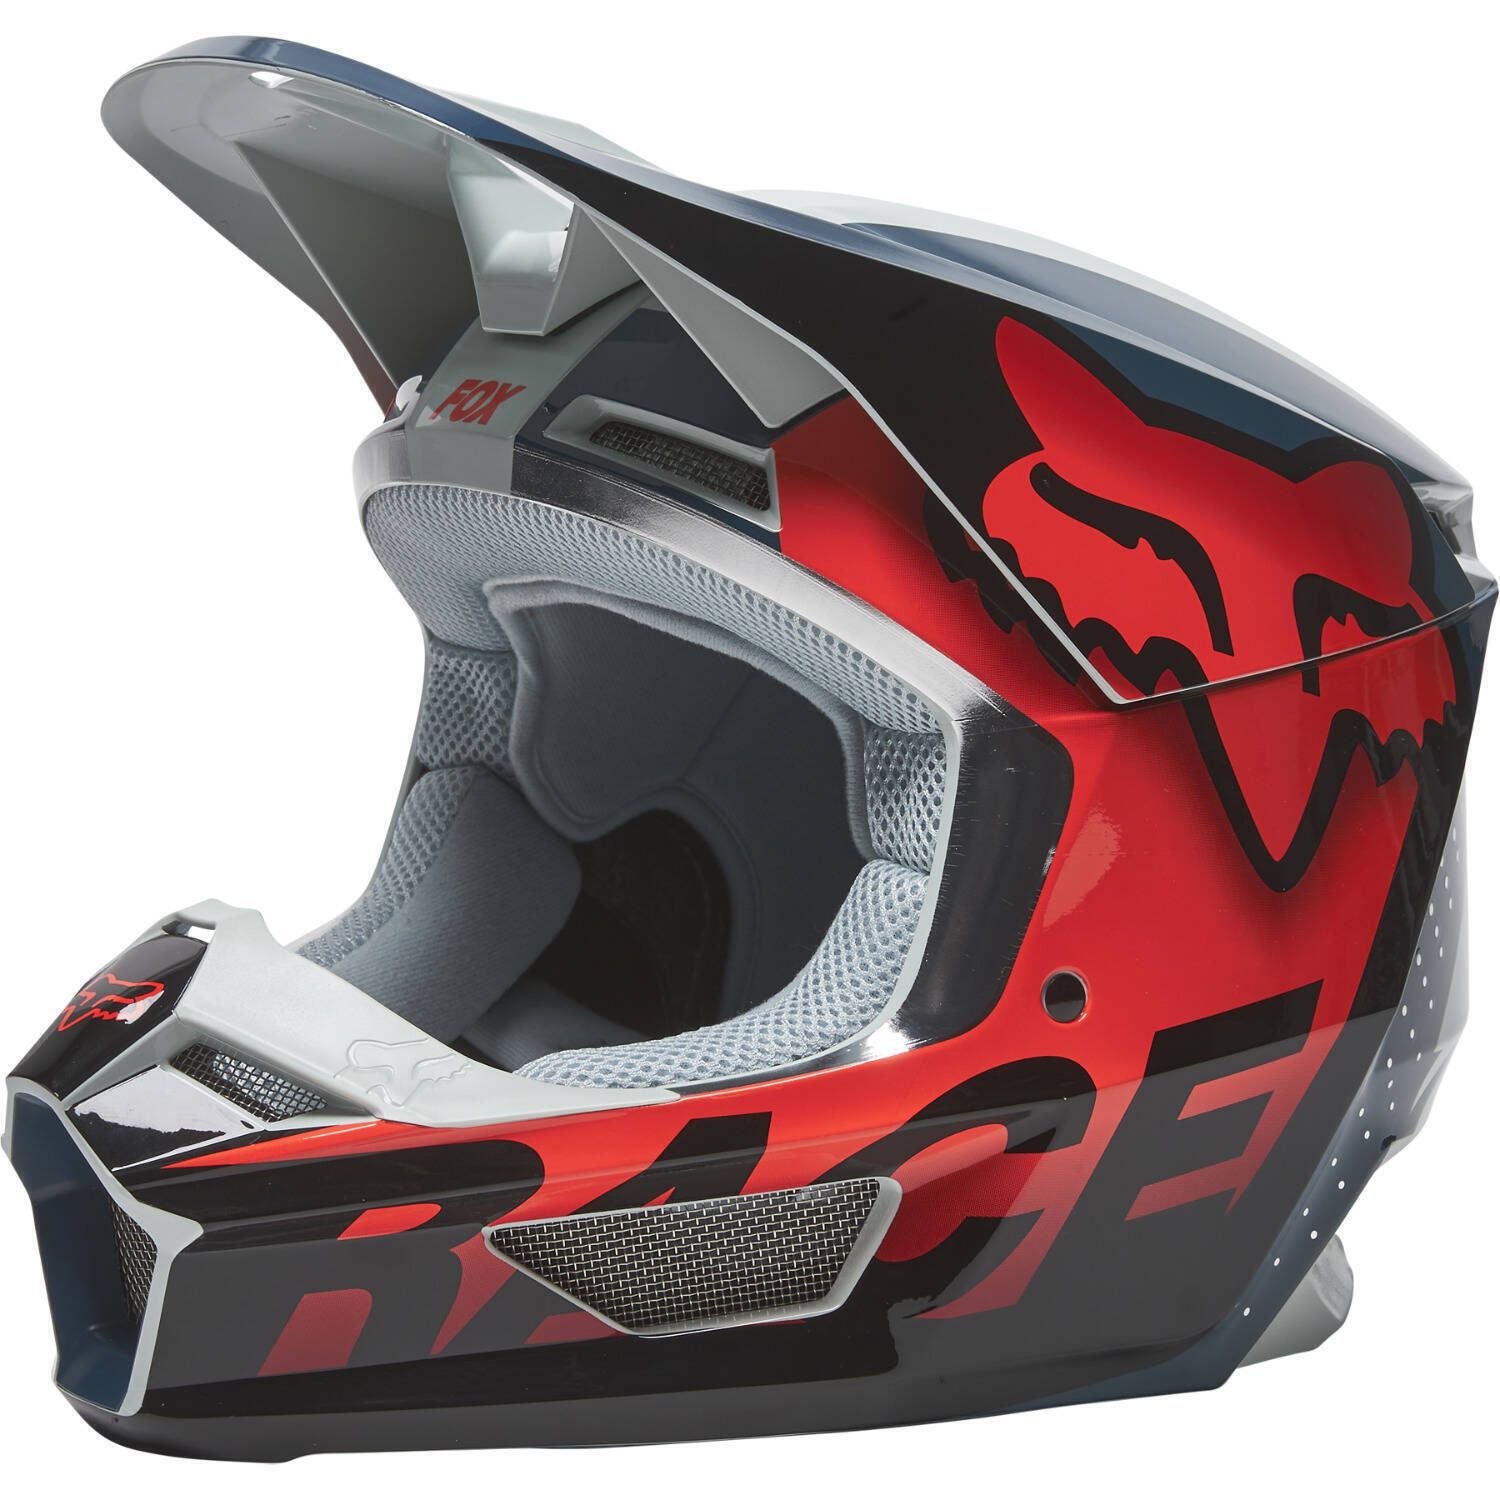 Fox Racing V1 Trice Helmet - Ottawa Goodtime Centre 